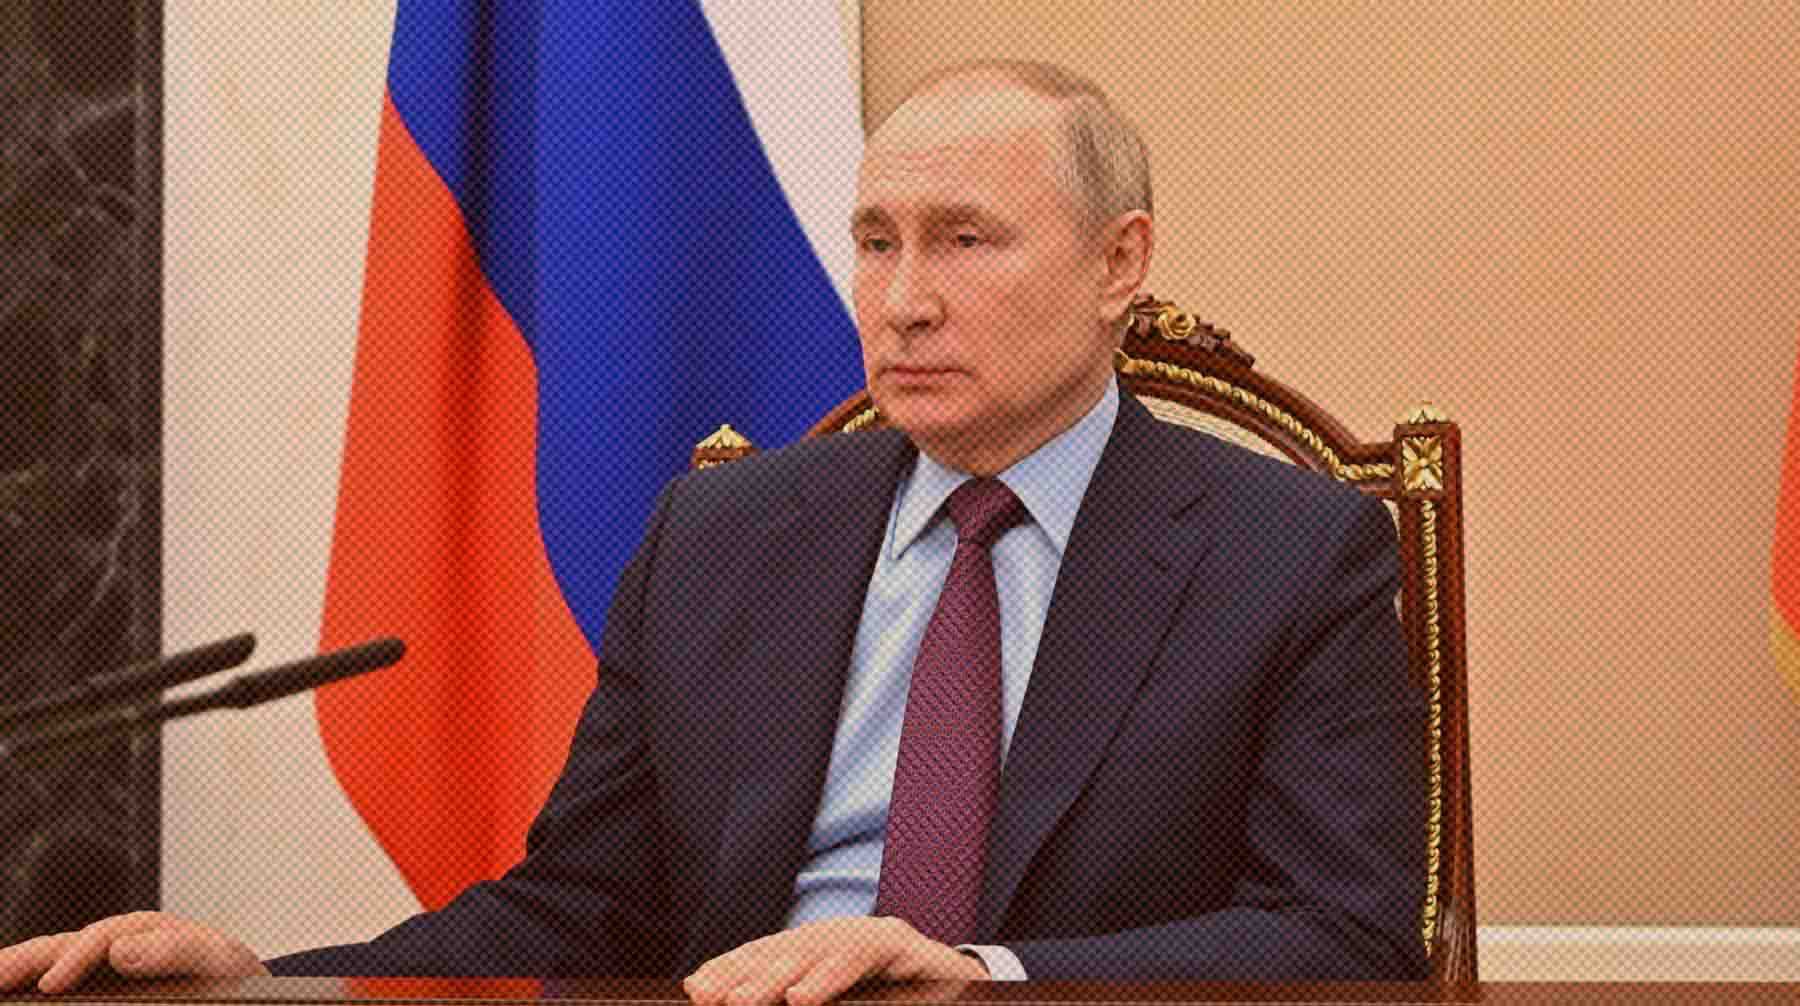 Dailystorm - Госдума приняла проект постановления об обращении к Путину по признанию ДНР и ЛНР